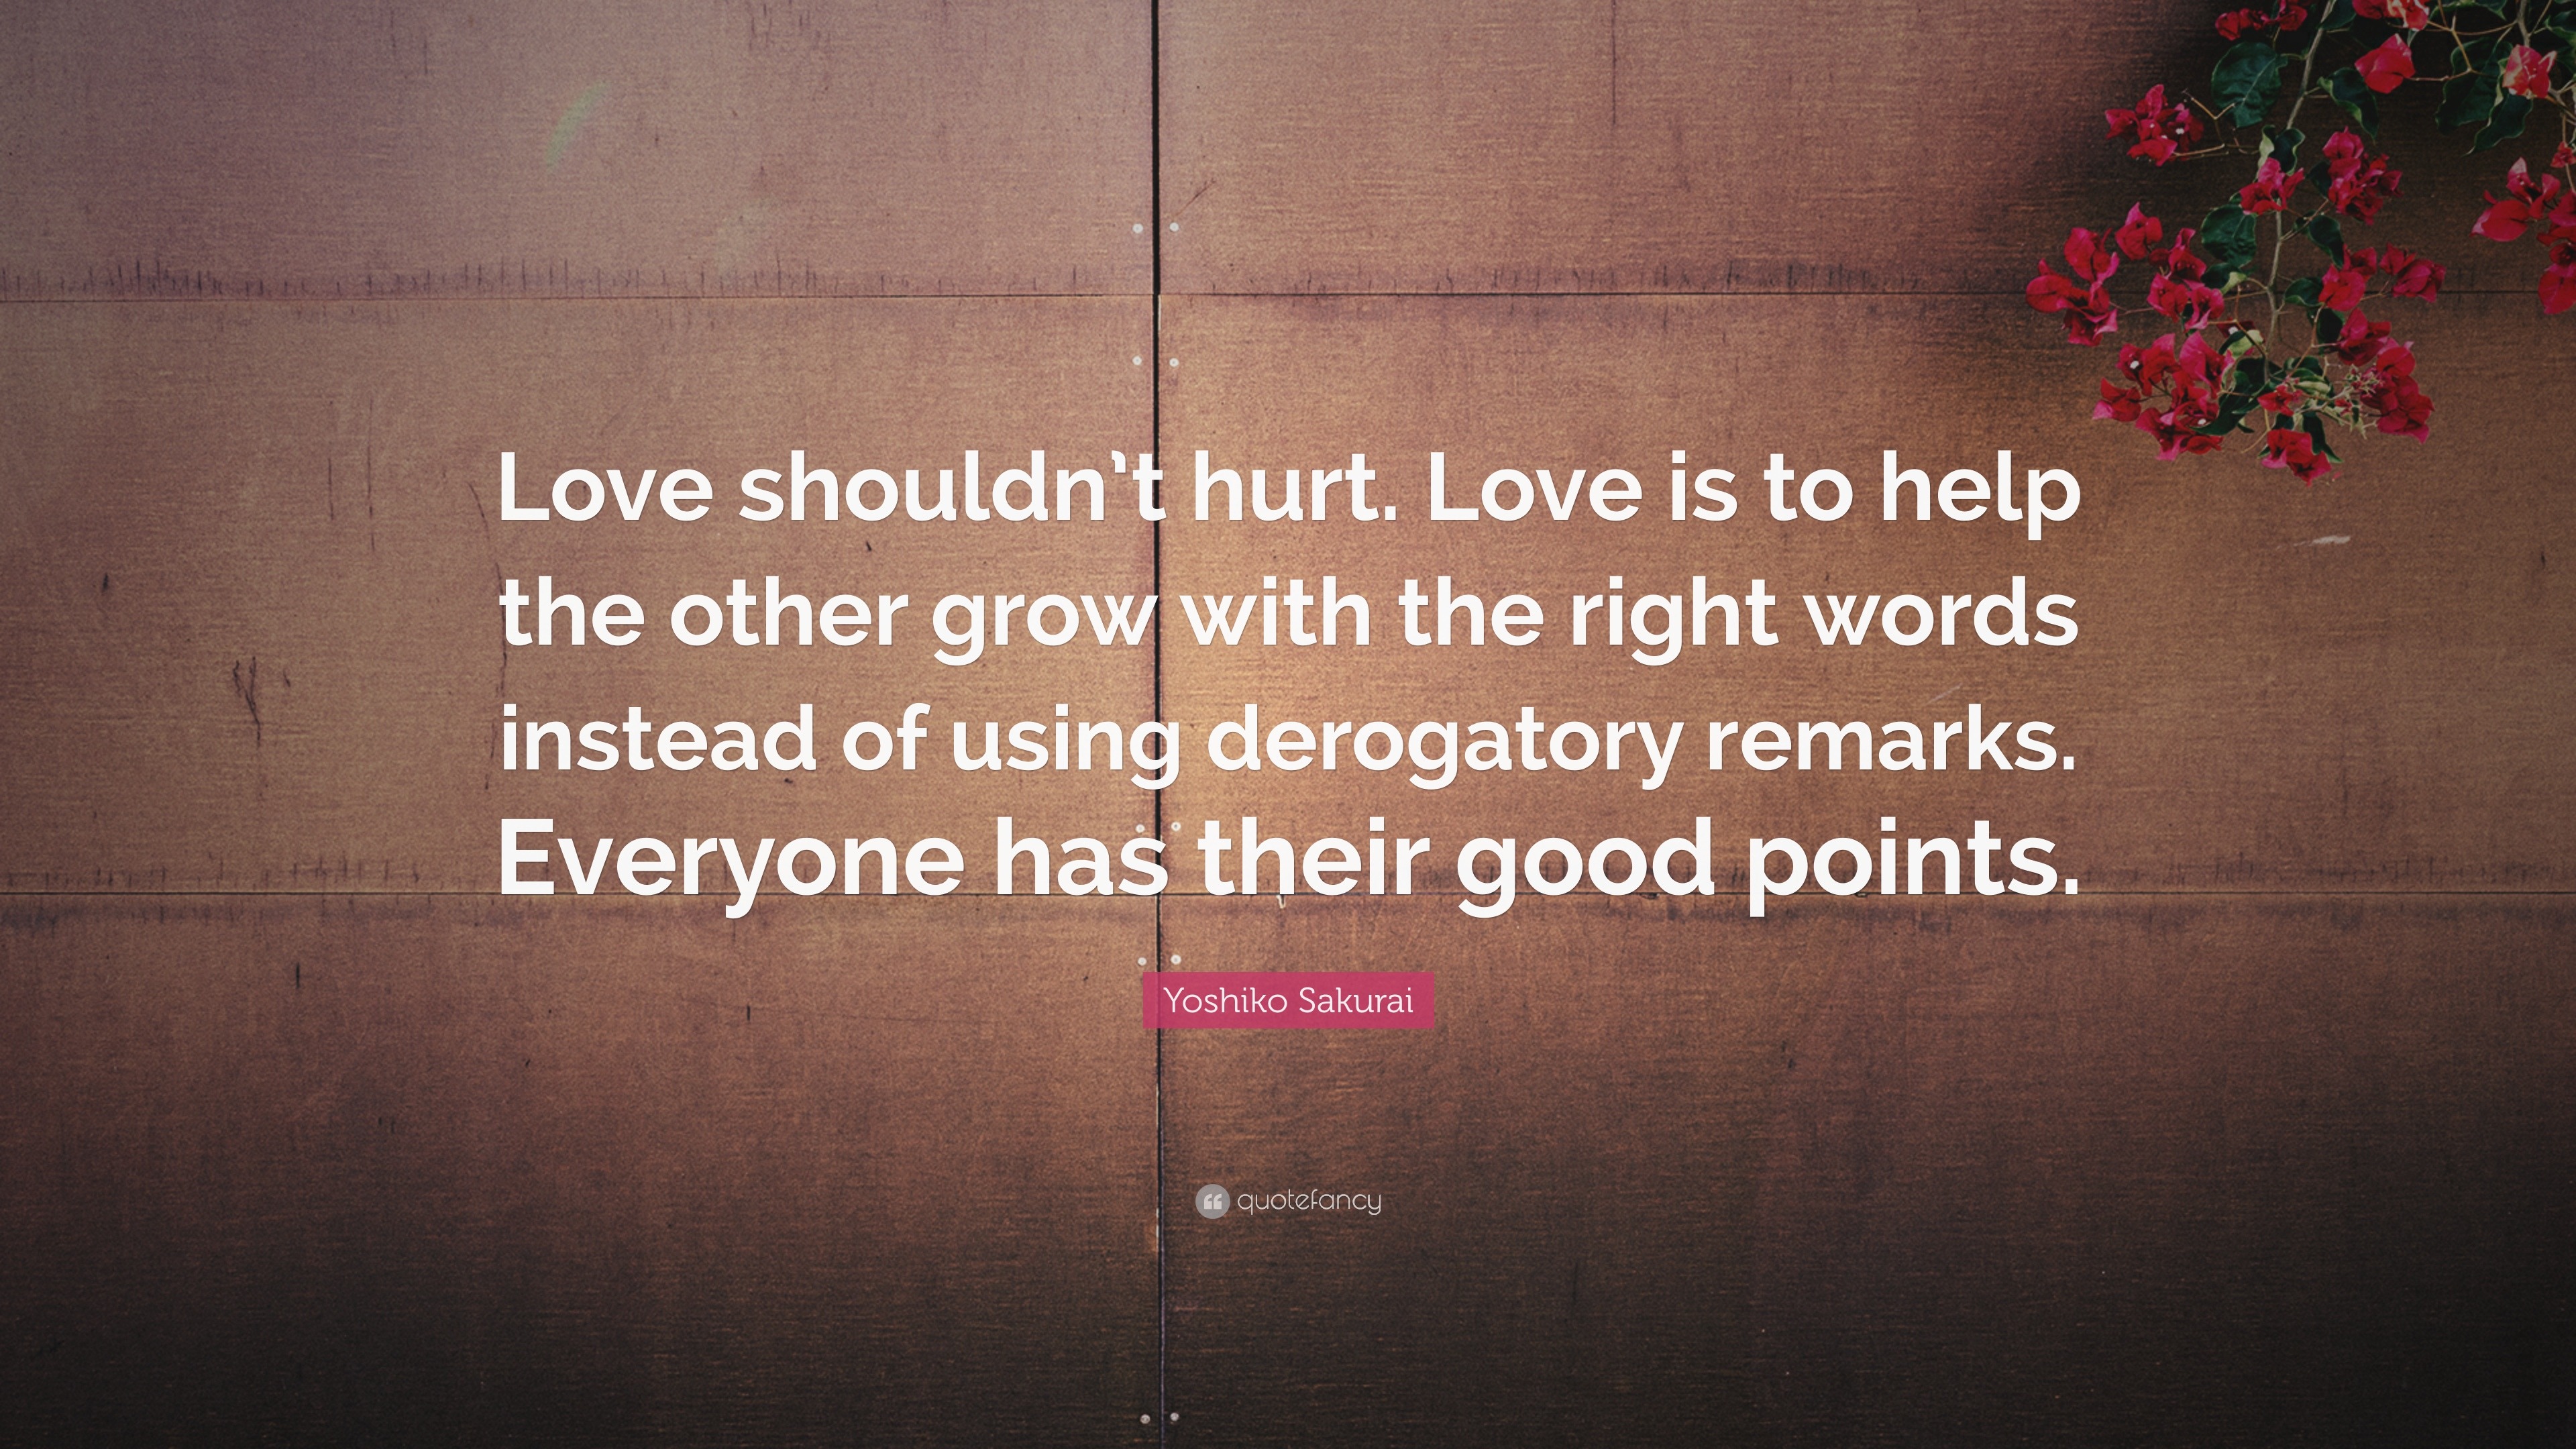 Yoshiko Sakurai Quote “Love shouldn t hurt Love is to help the